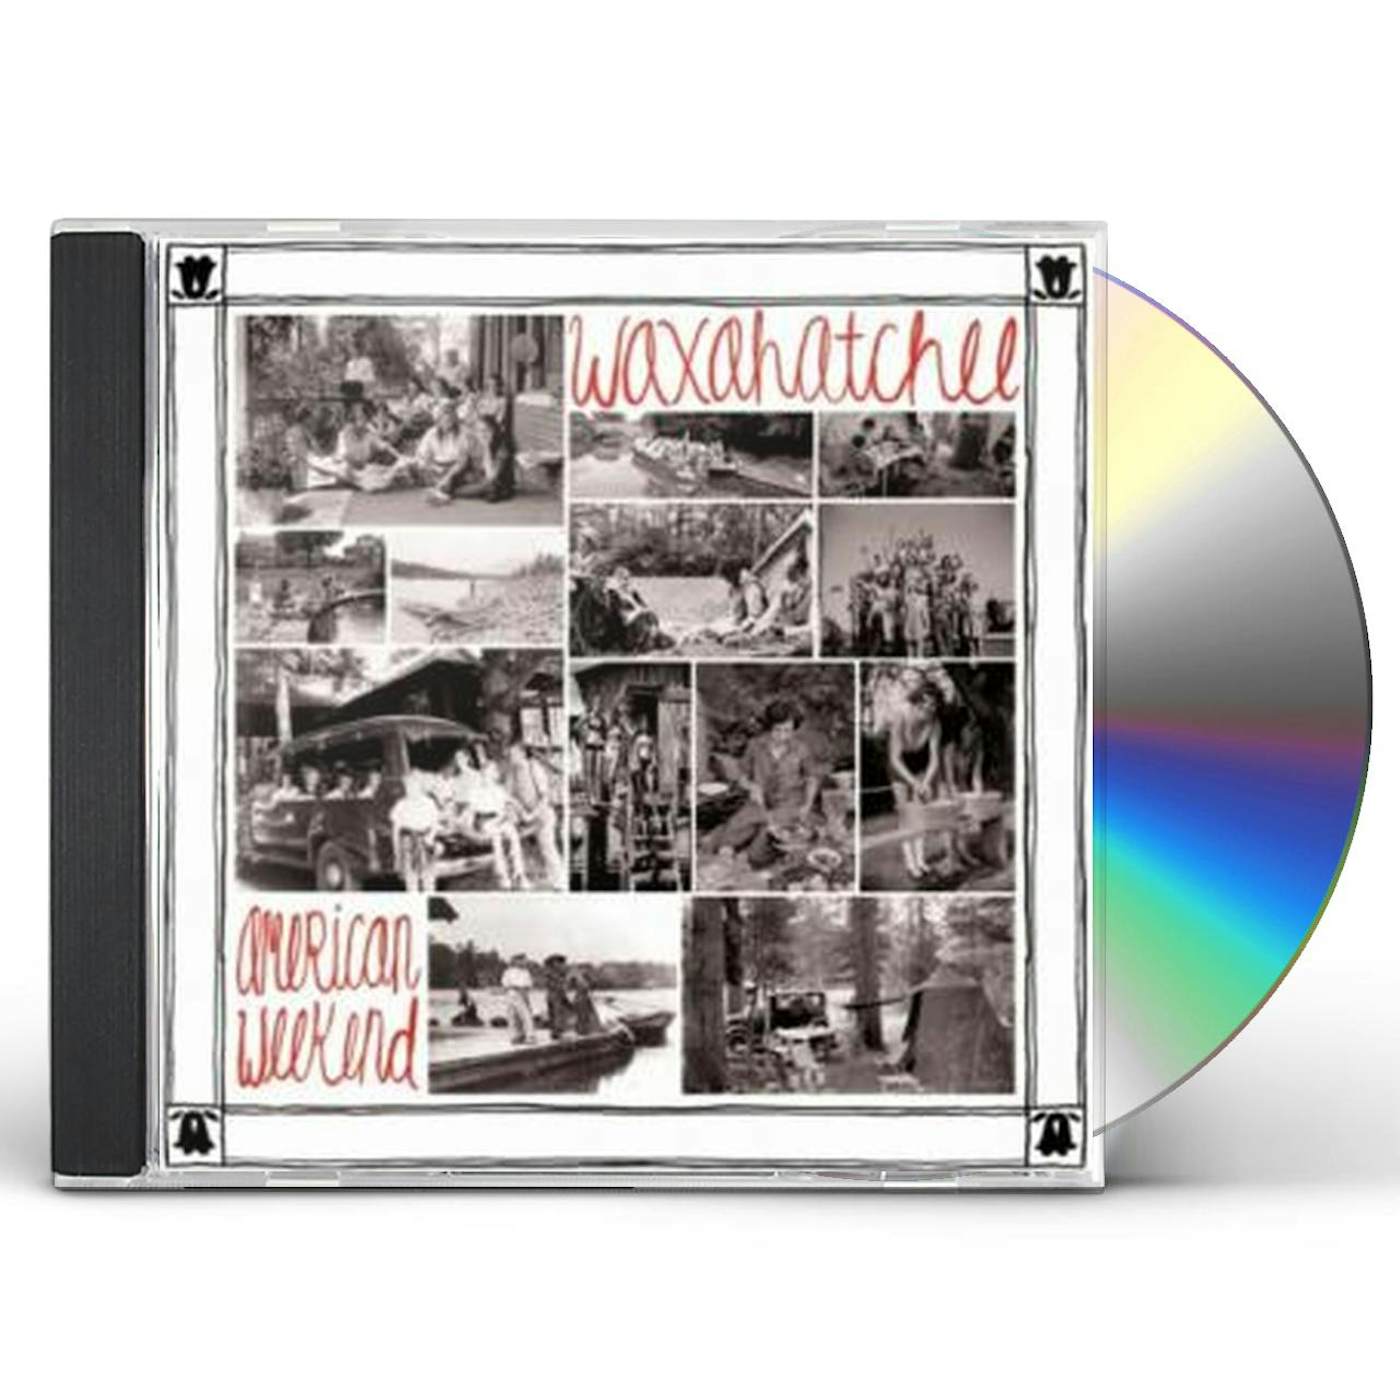 Waxahatchee AMERICAN WEEKEND CD